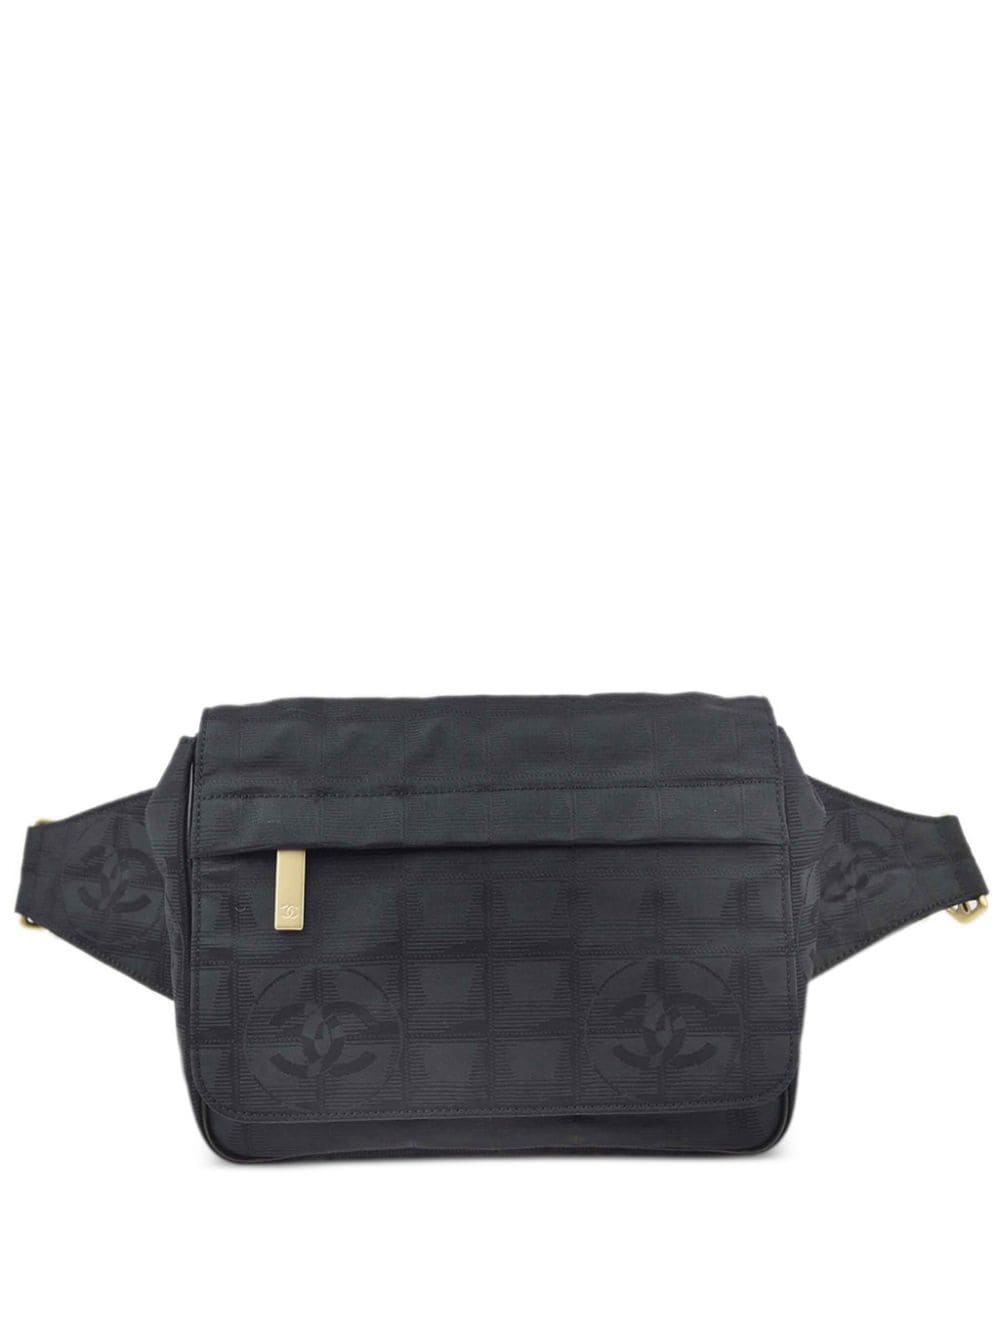 Pre-owned Chanel 2005 Travel Line Belt Bag In Black